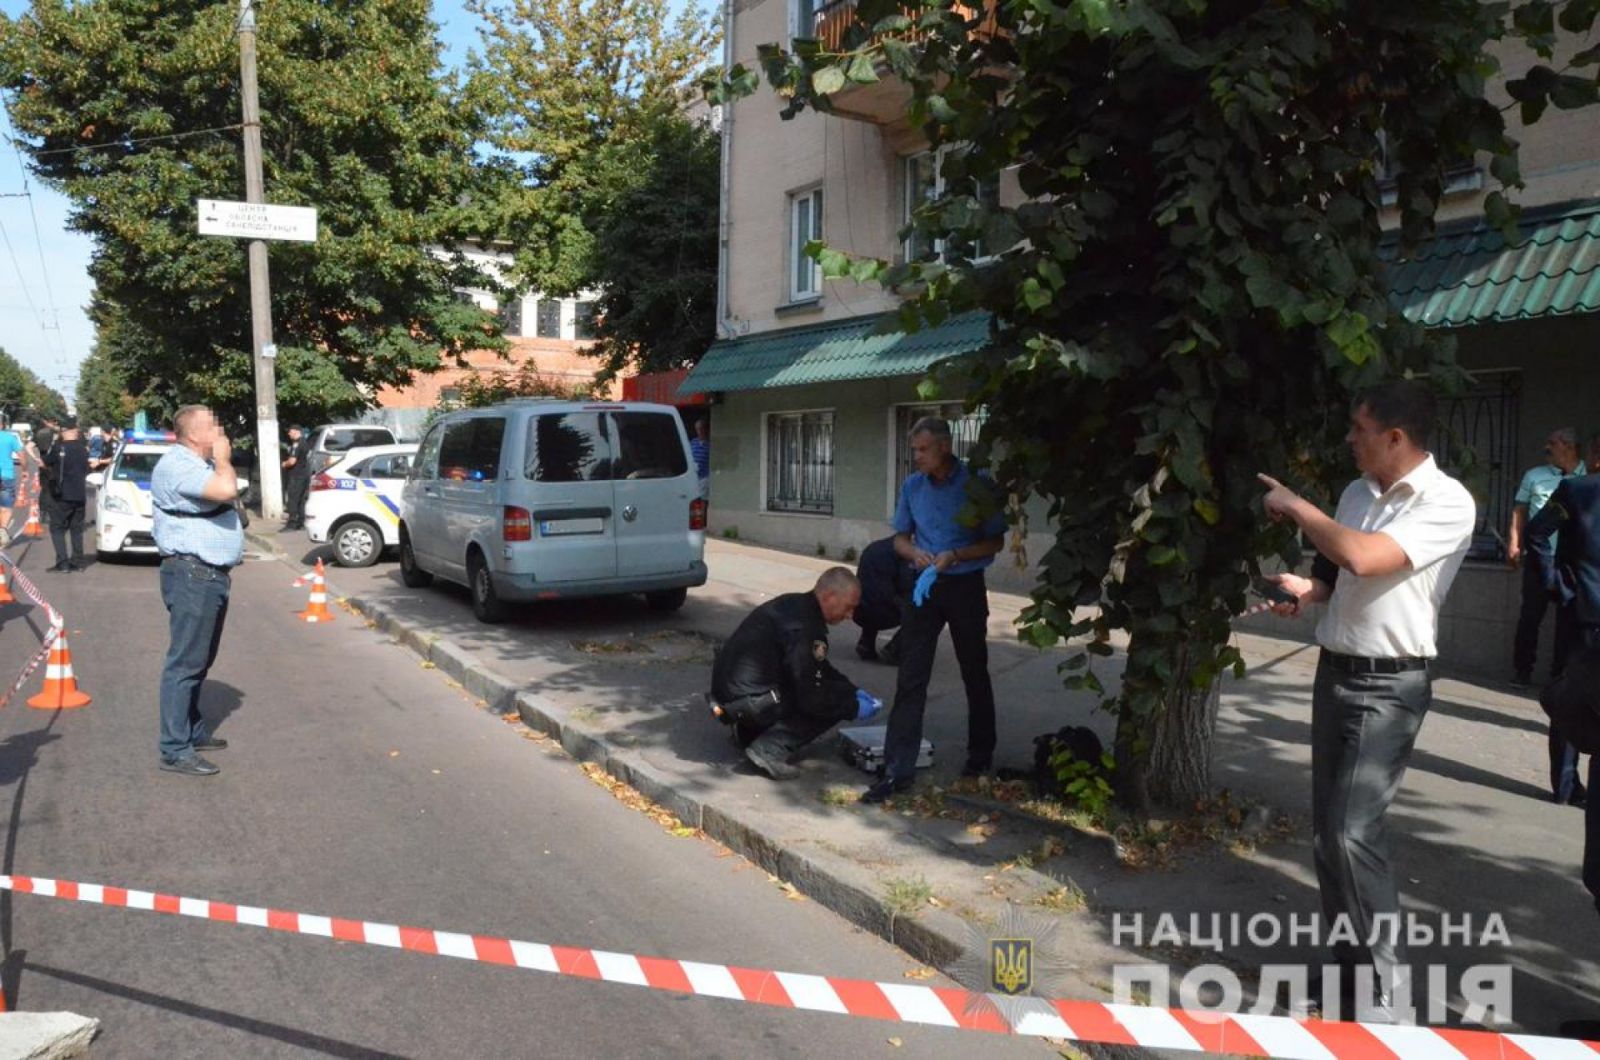 Нападение на инкассаторов в Житомире: охранник получил ранение, полиция ввела план "Сирена". Фото: Нацполиция